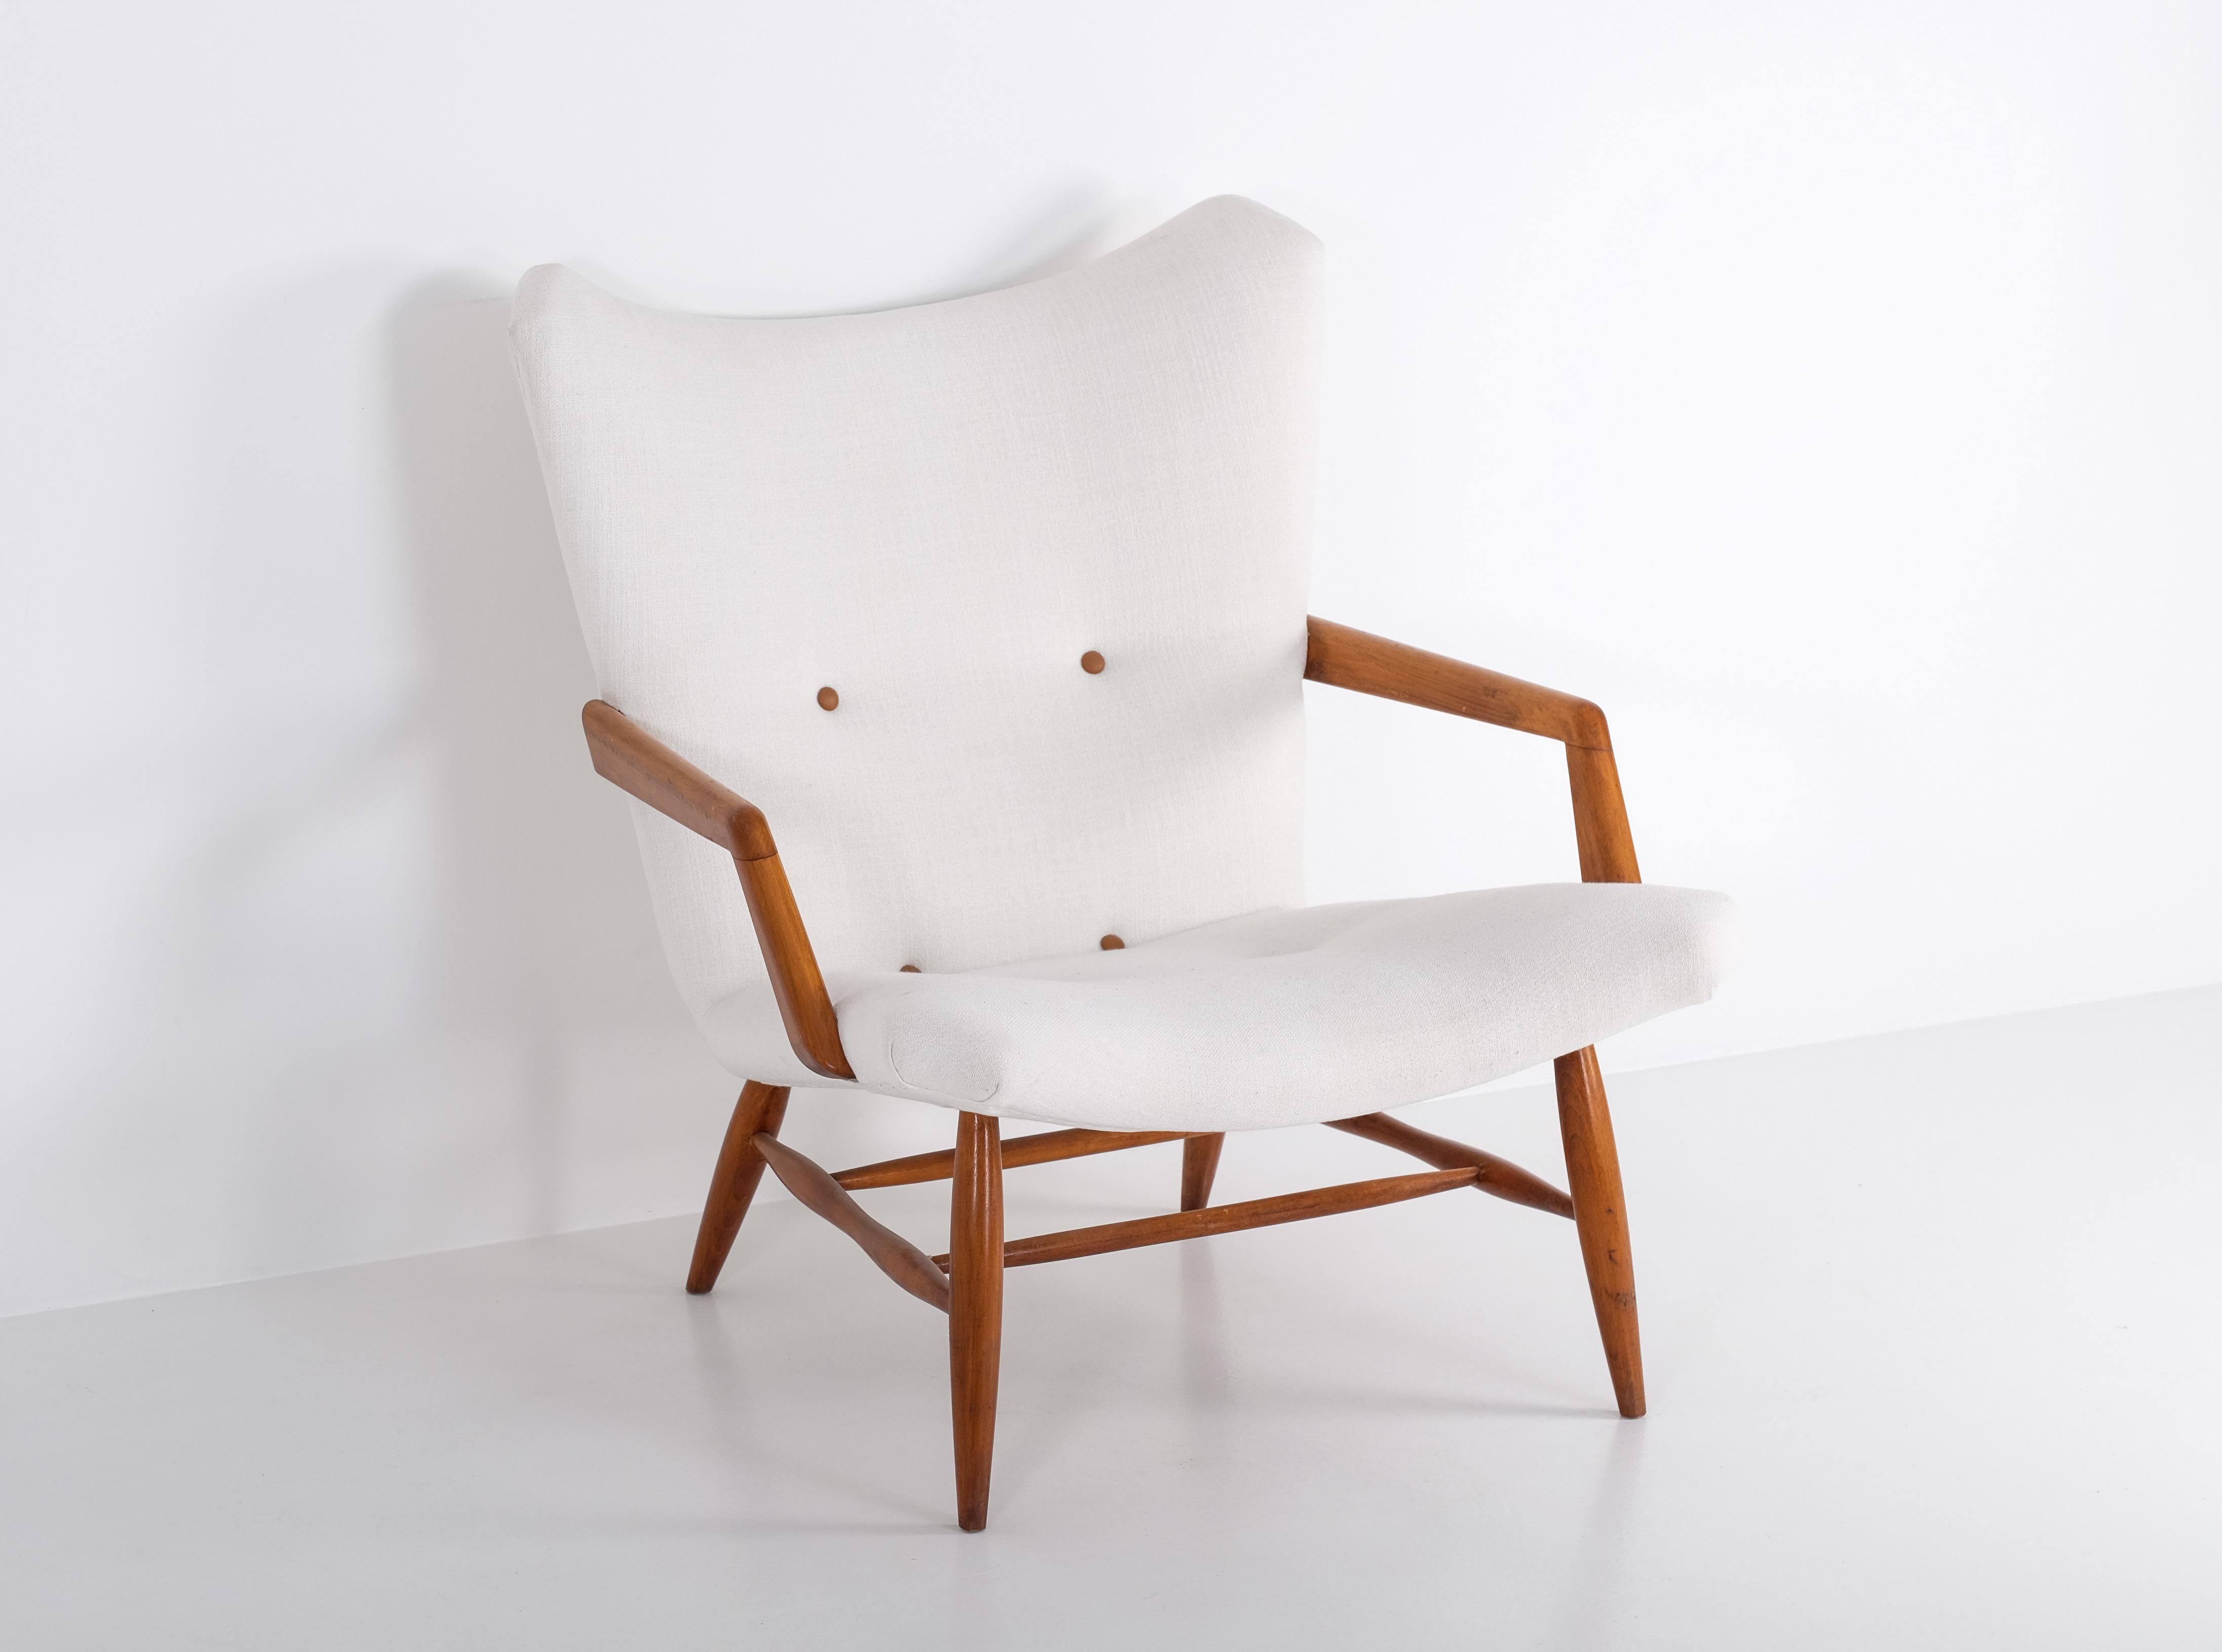 Ein Sessel aus Mahagoniholz, entworfen von Svante Skogh, Schweden, 1950er Jahre.
Neu gepolstert. Ausgezeichneter Zustand.